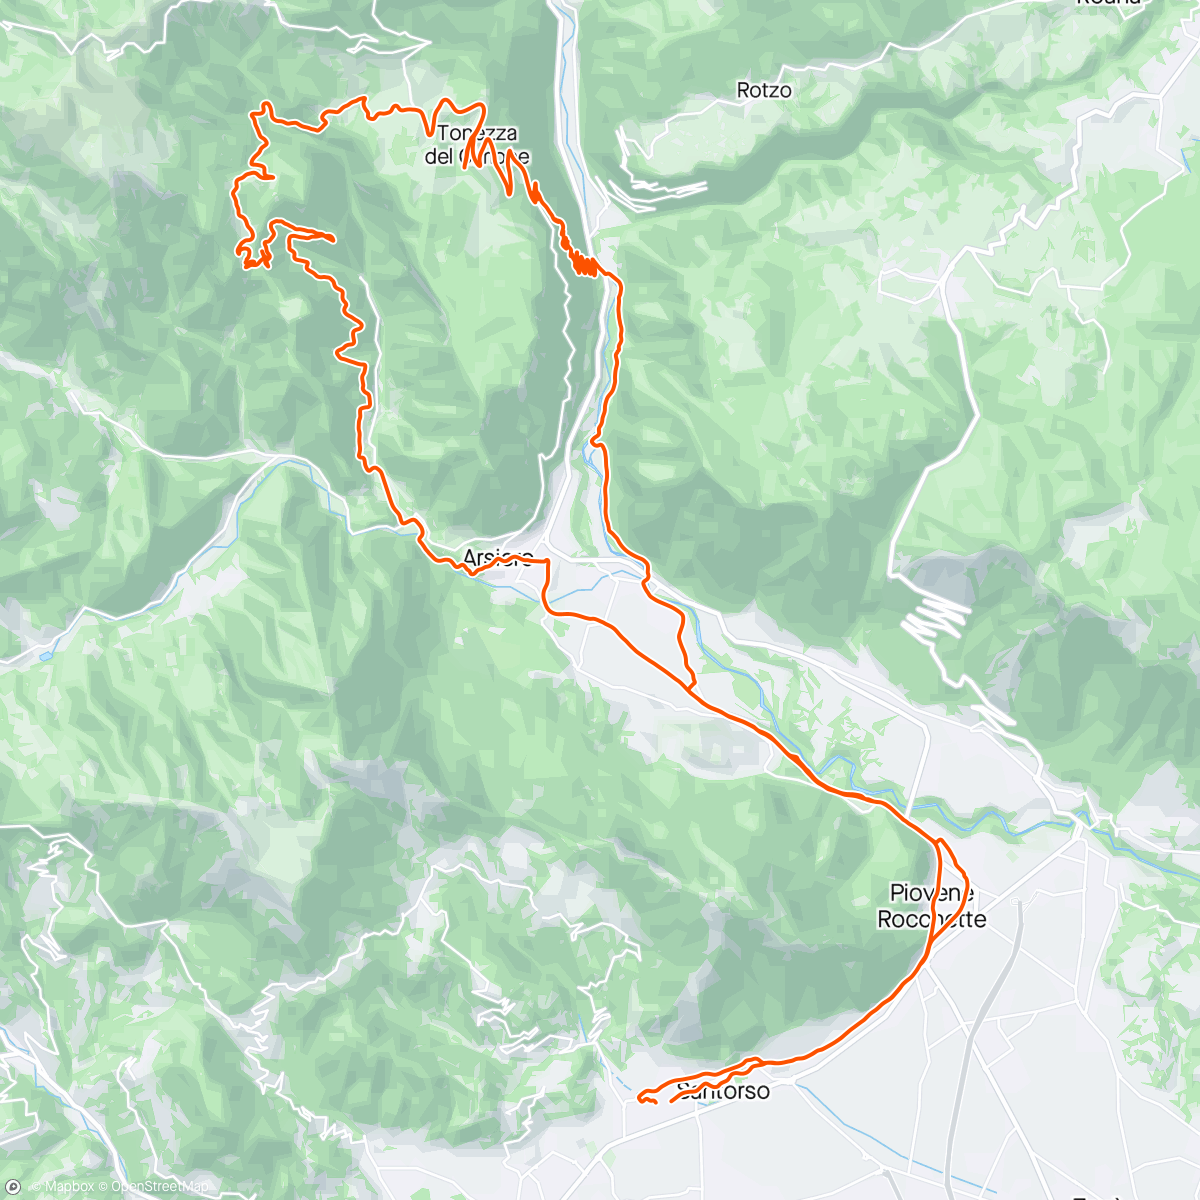 Map of the activity, arsiero malga zolle tonezza contra pria